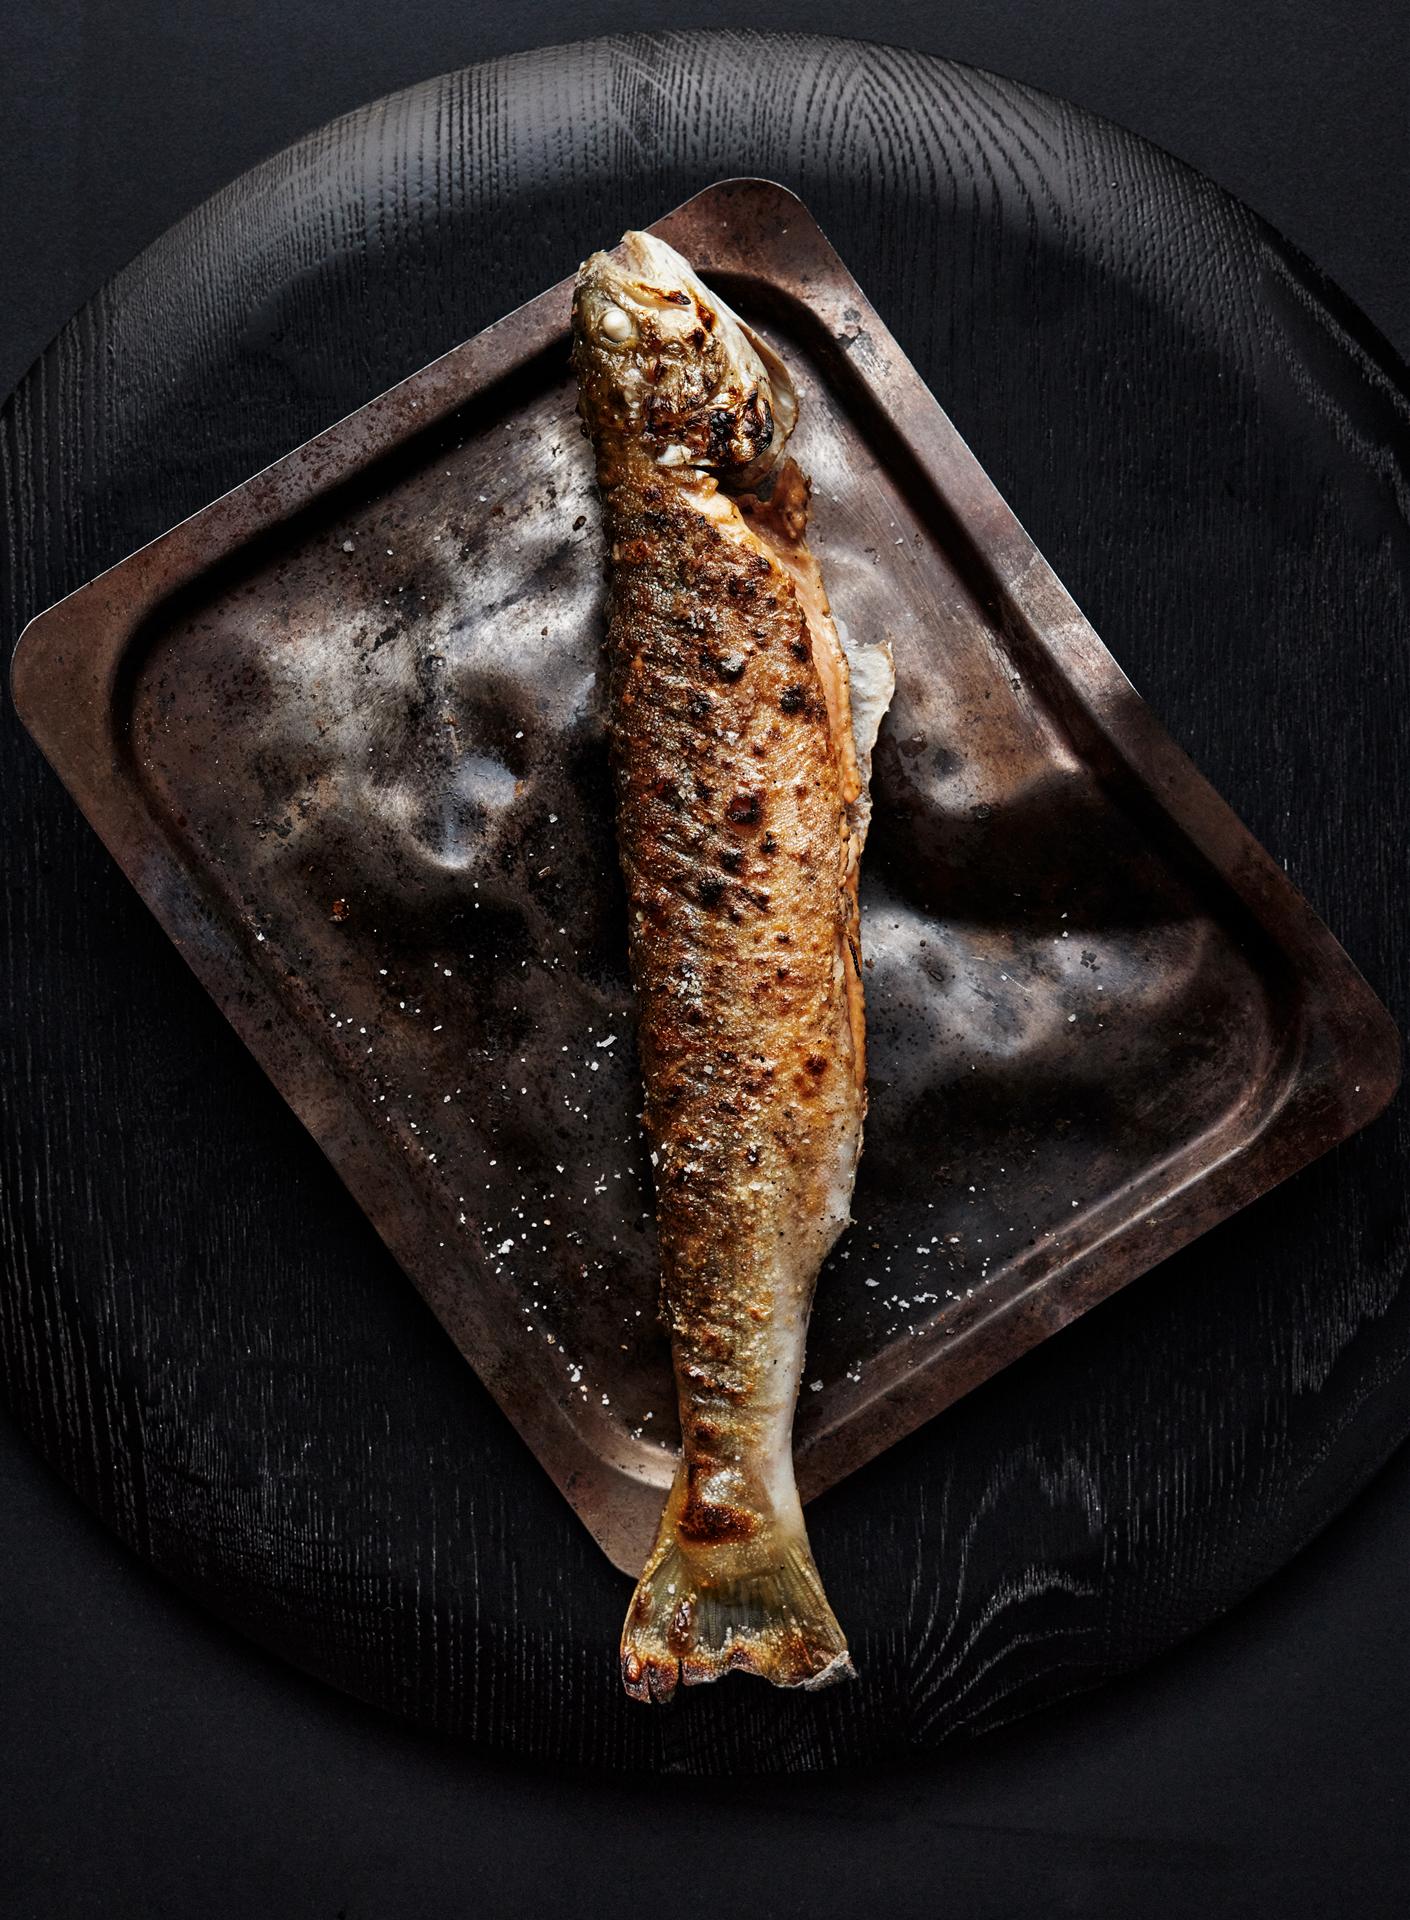 Det skal serveres helstekt fisk på Svenssons nye restaurant - «som på en taverna».